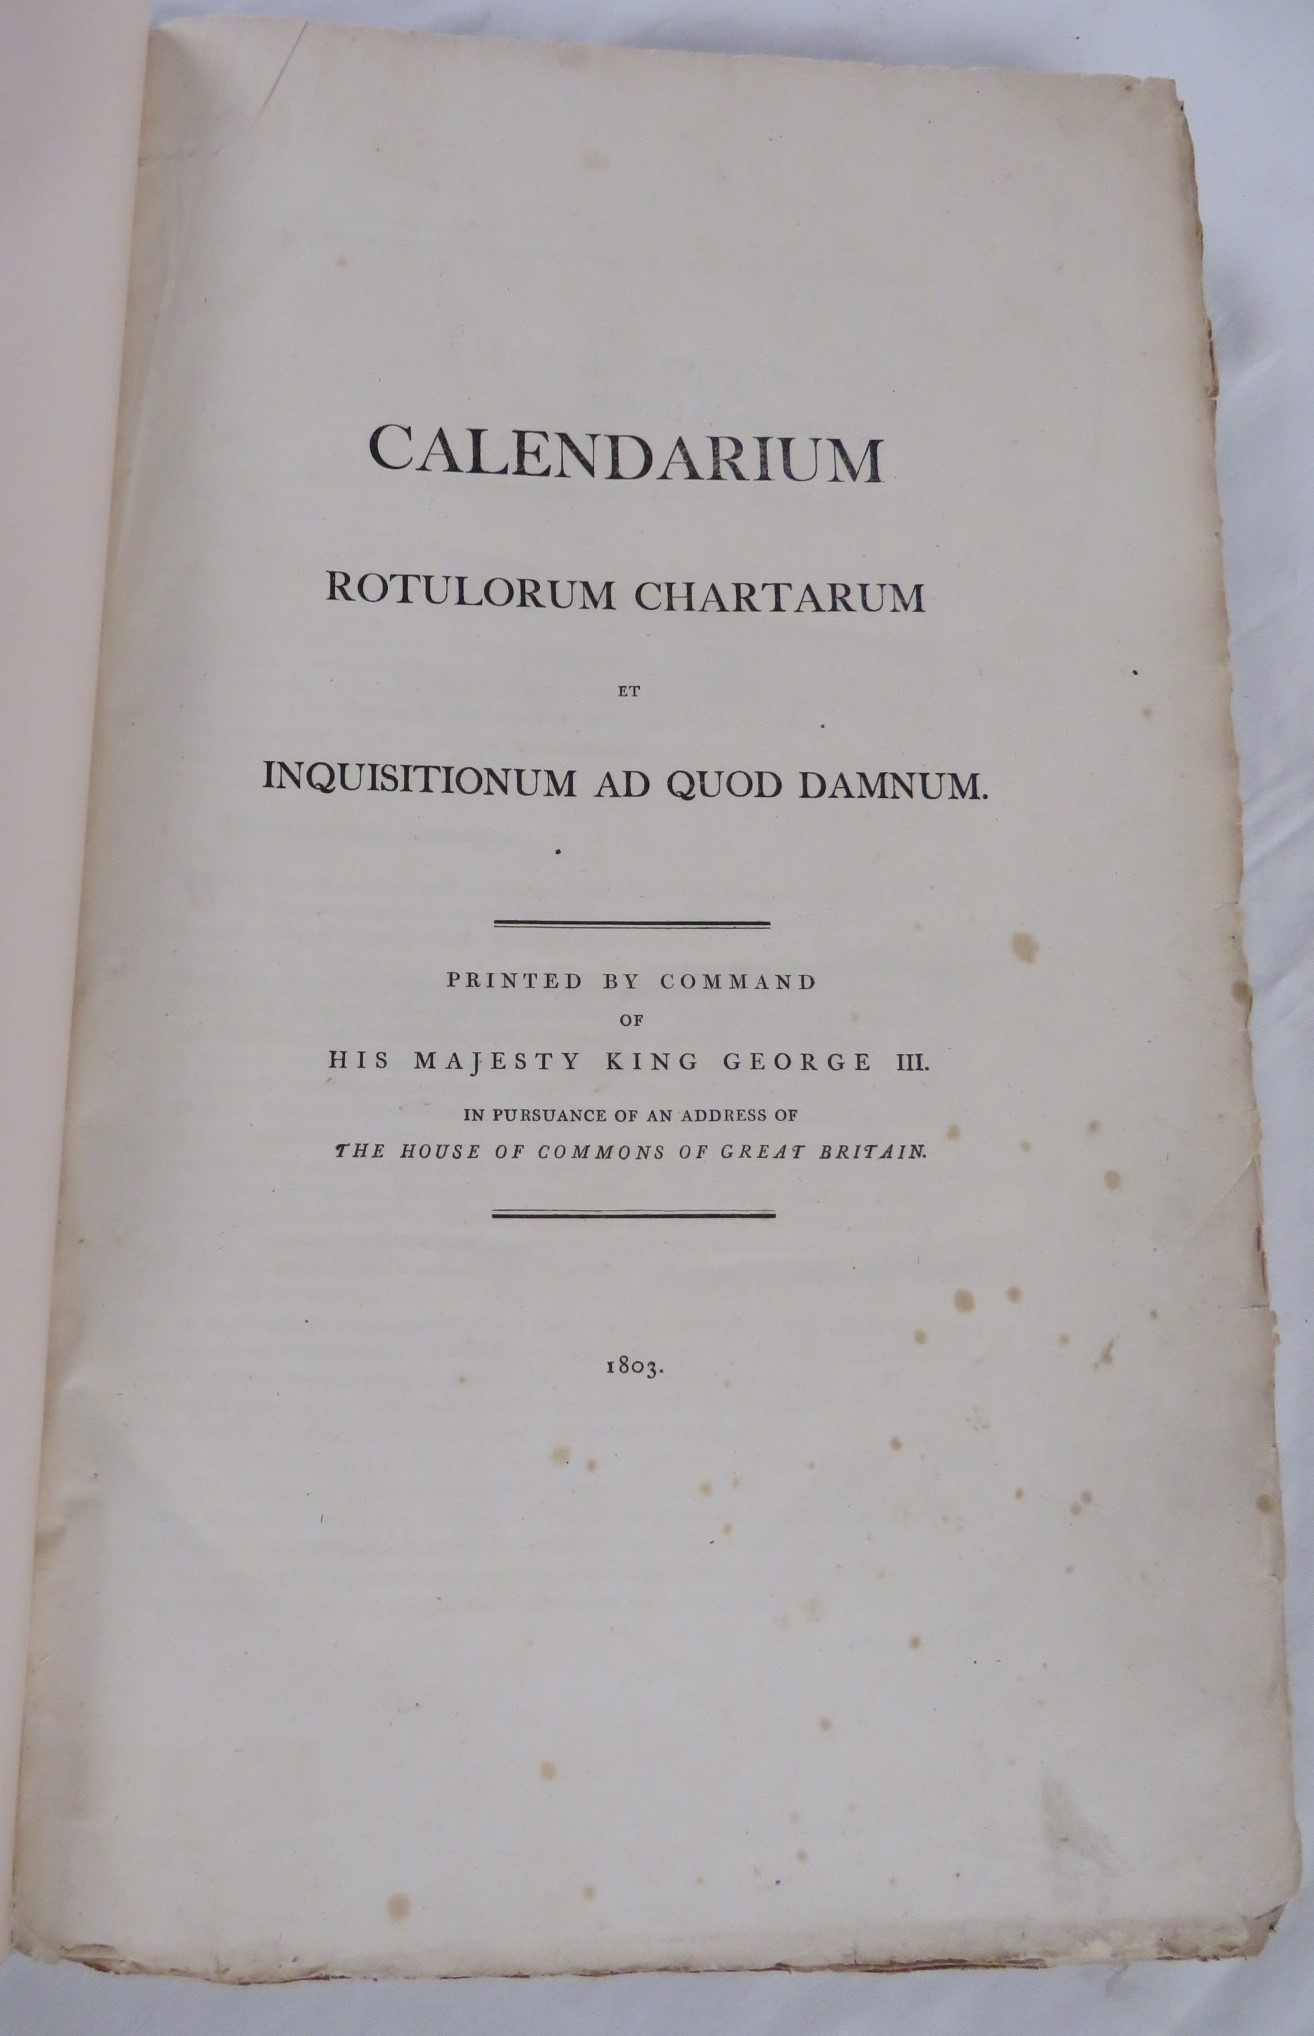 Calendarium Rotulorum Chartarum et Inquisitionum Ad Quod Damnum, printed by Command of His Majesty - Image 2 of 3